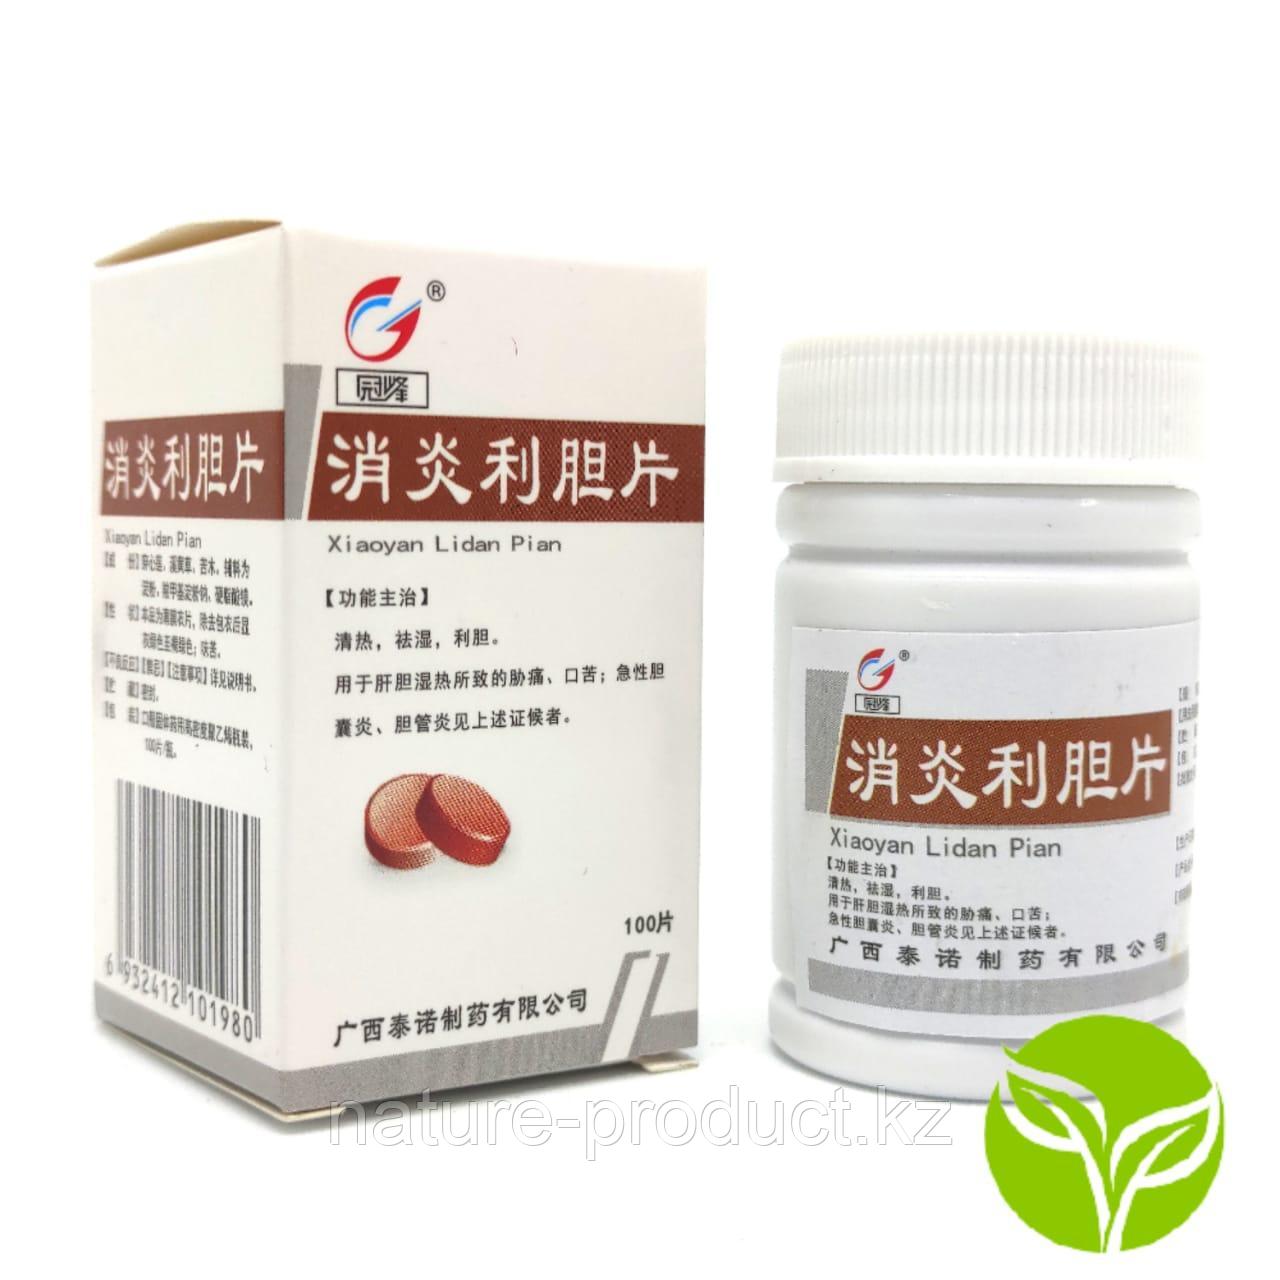 Капсулы "Xiaoyan Lidan Pian" для лечения и профилактики желчекаменной болезни и печени, лидань 100шт